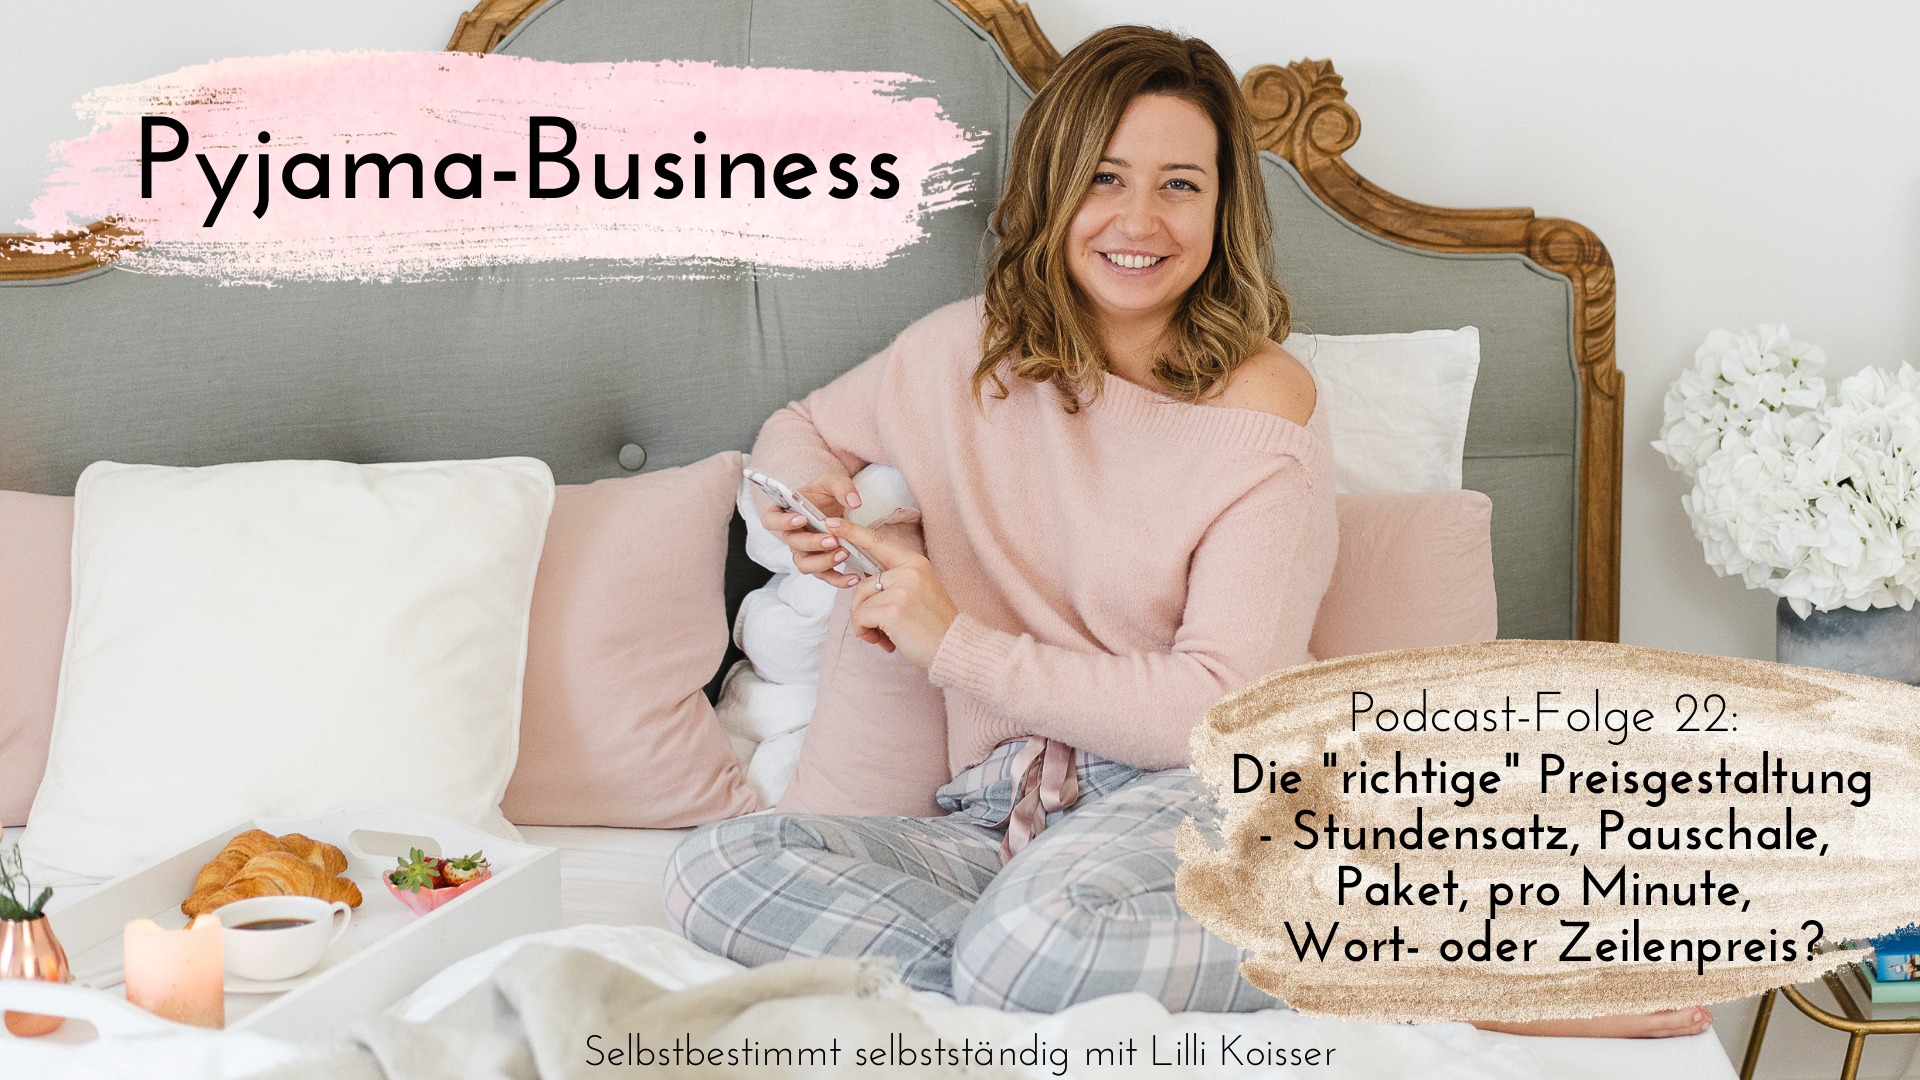 Pyjama-Business Podcast Folge 22 Die richtige Preisgestaltung - Stundensatz, Pauschale, Paket, pro Minute, Wort- oder Zeilenpreis